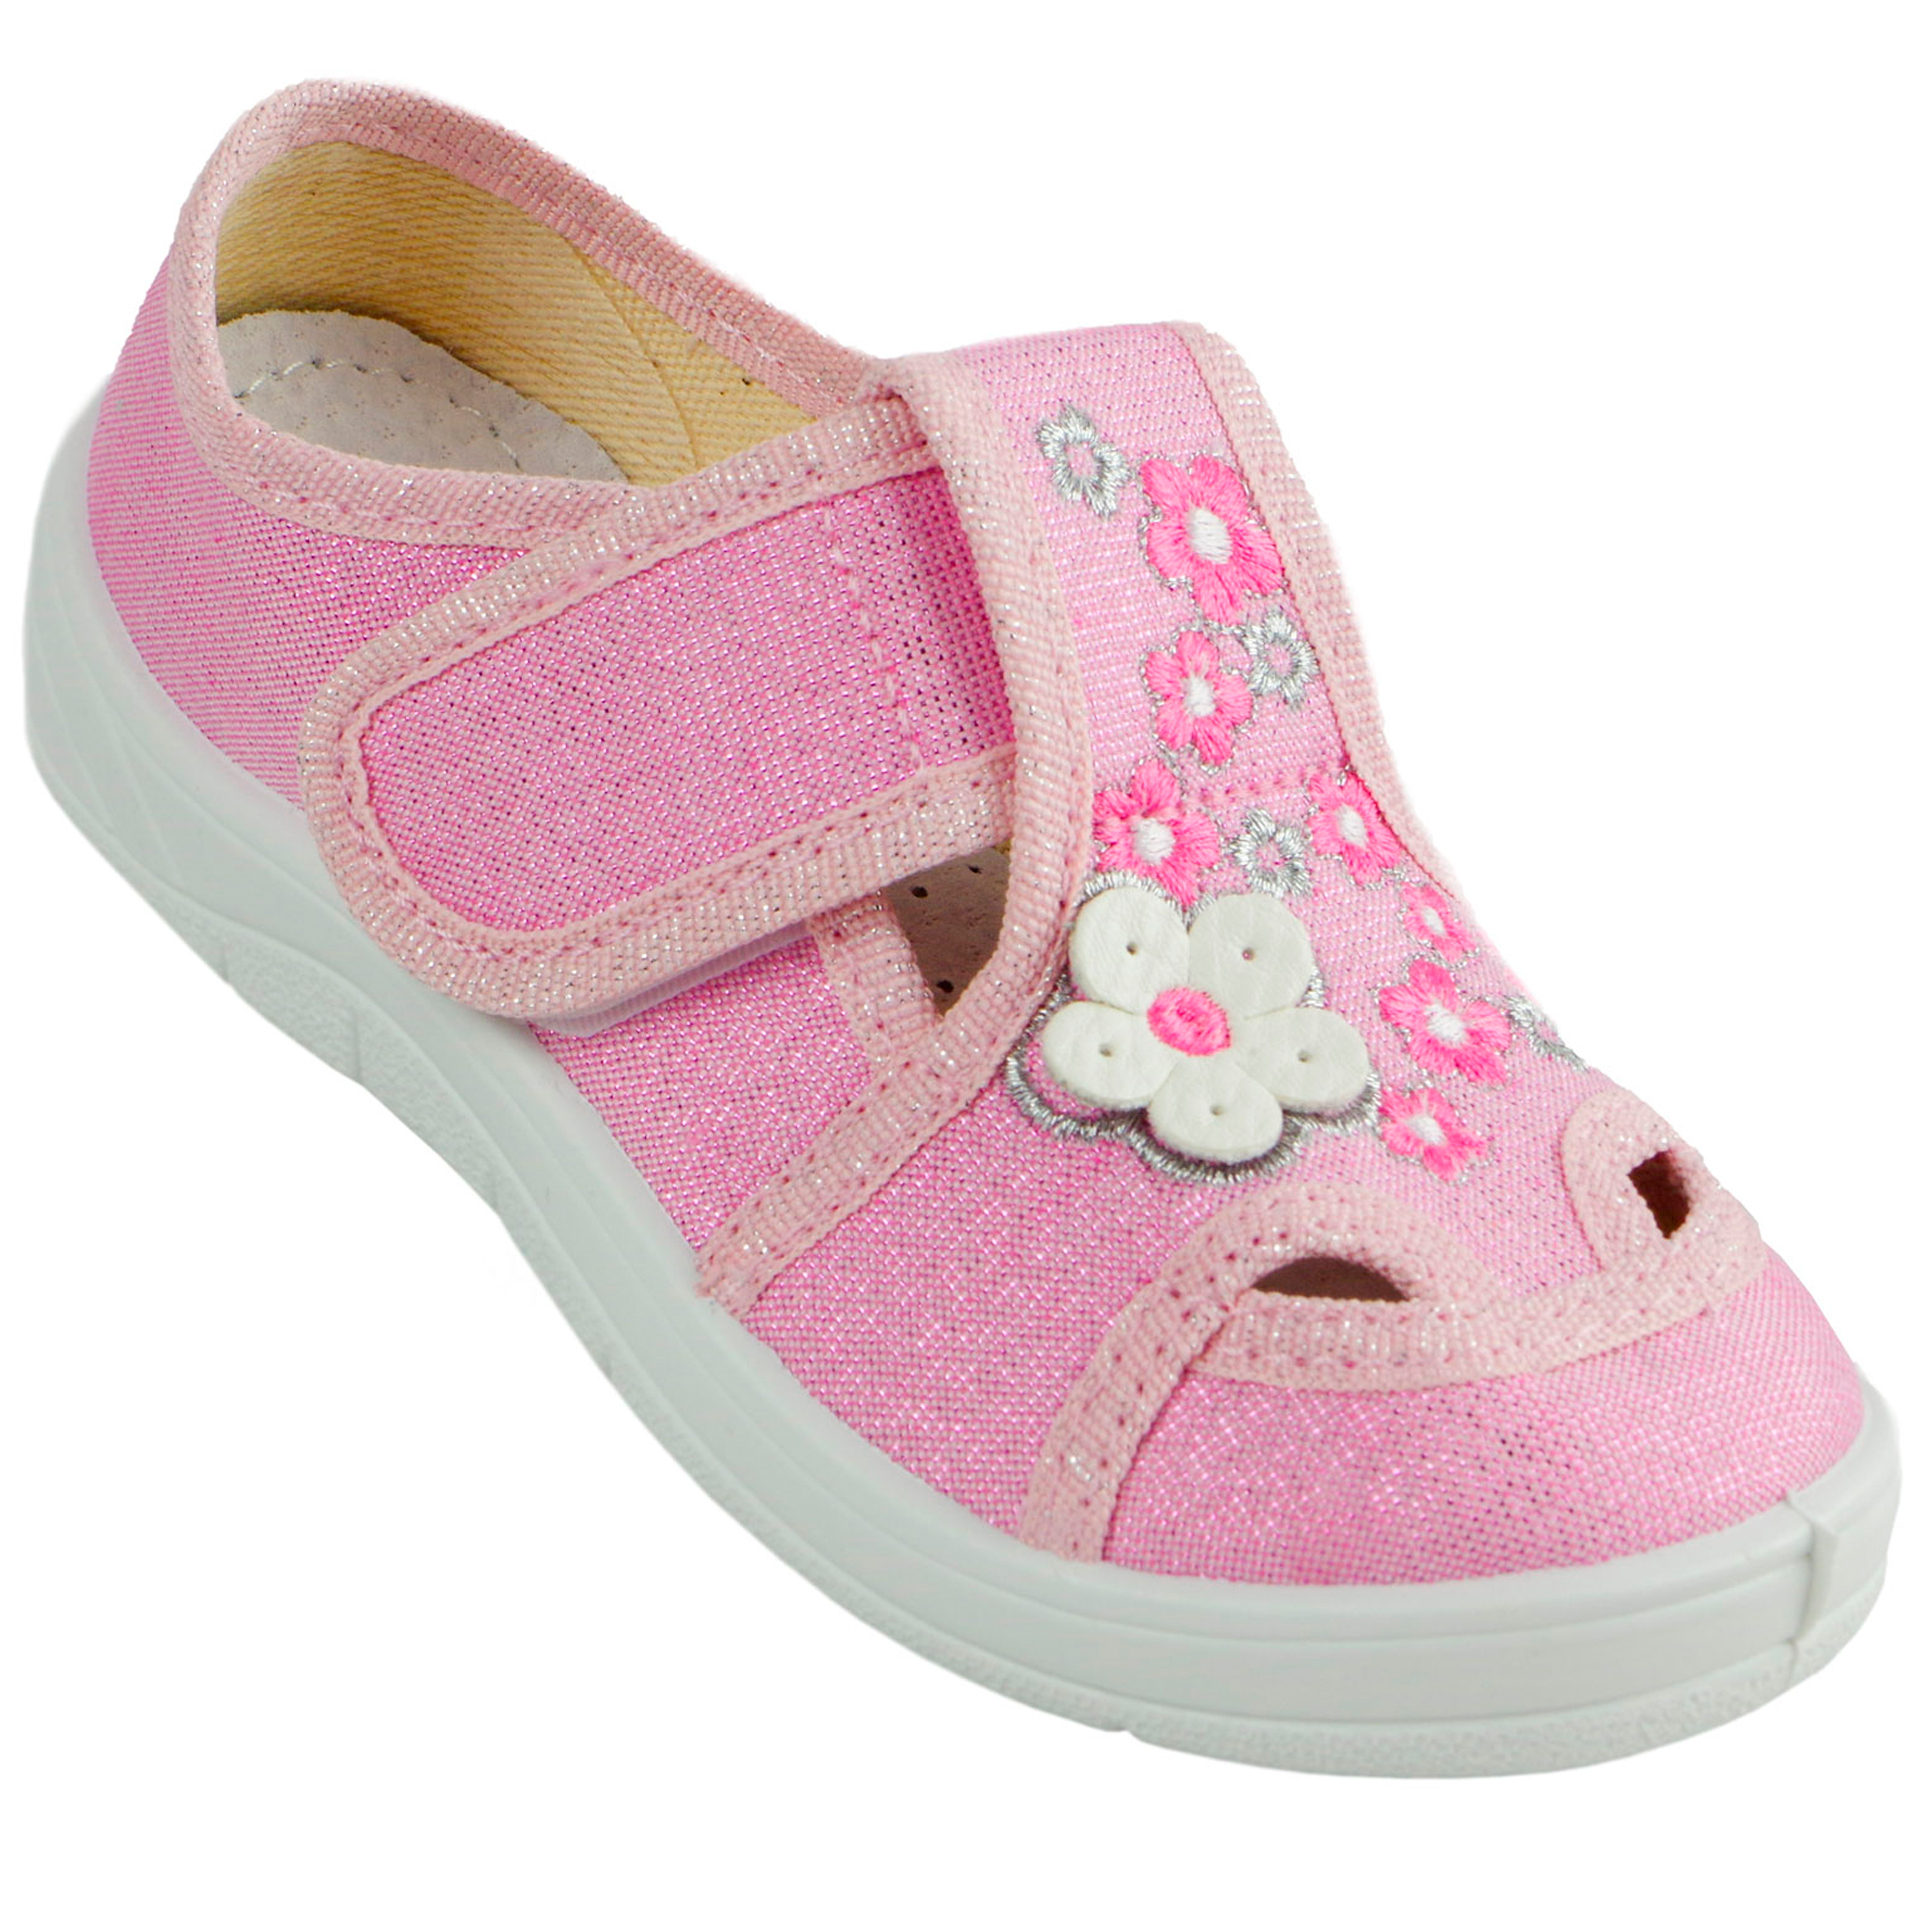 Текстильная обувь для девочек Тапочки Мила (2039) цвет Розовый 24-30 размеры – Sole Kids